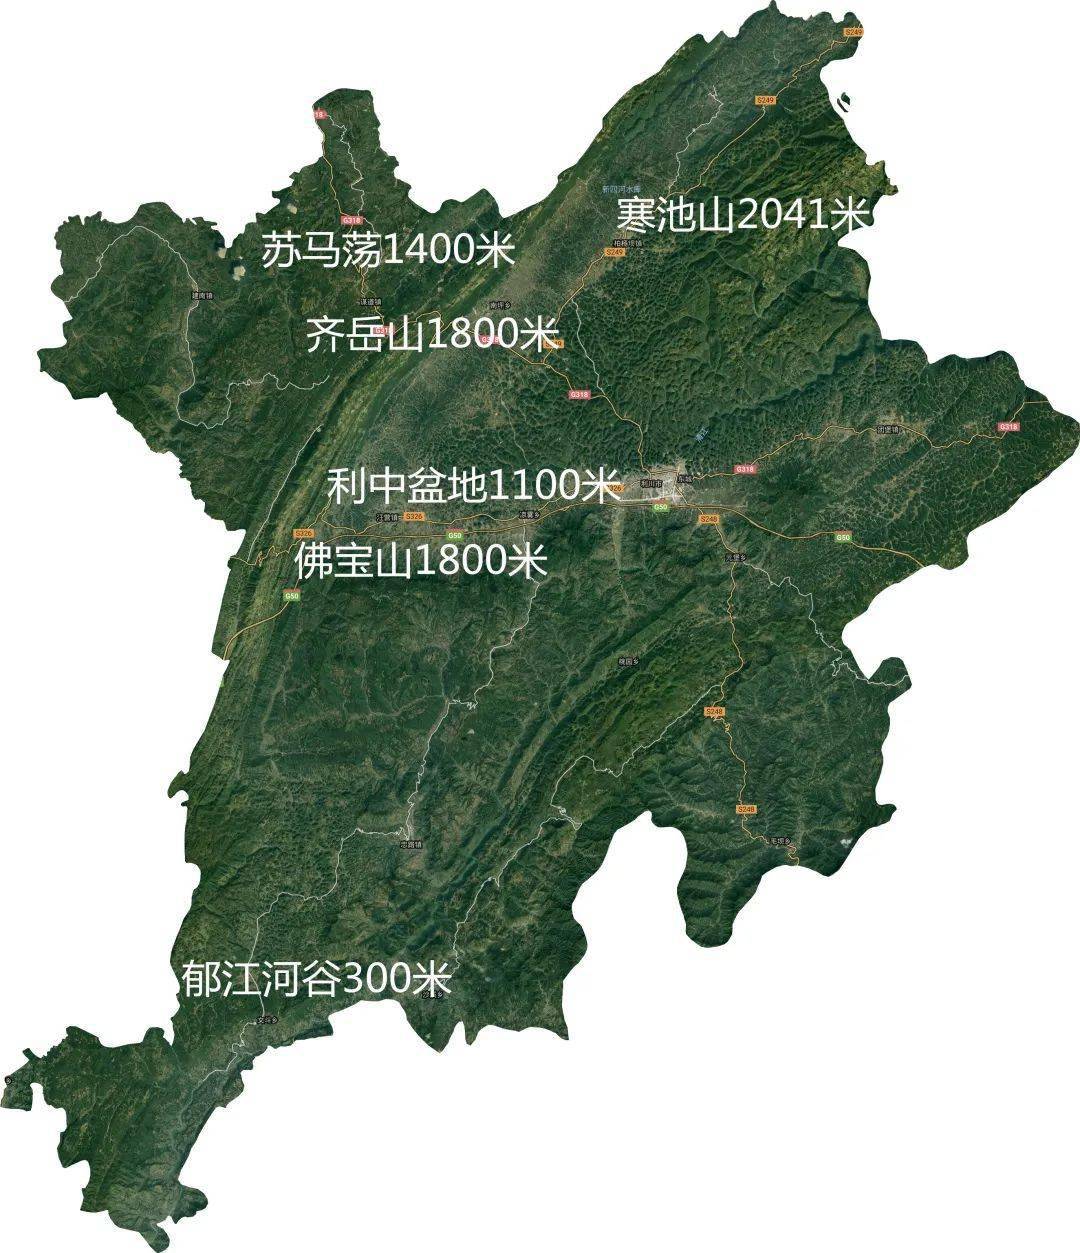 利川各乡镇地图图片